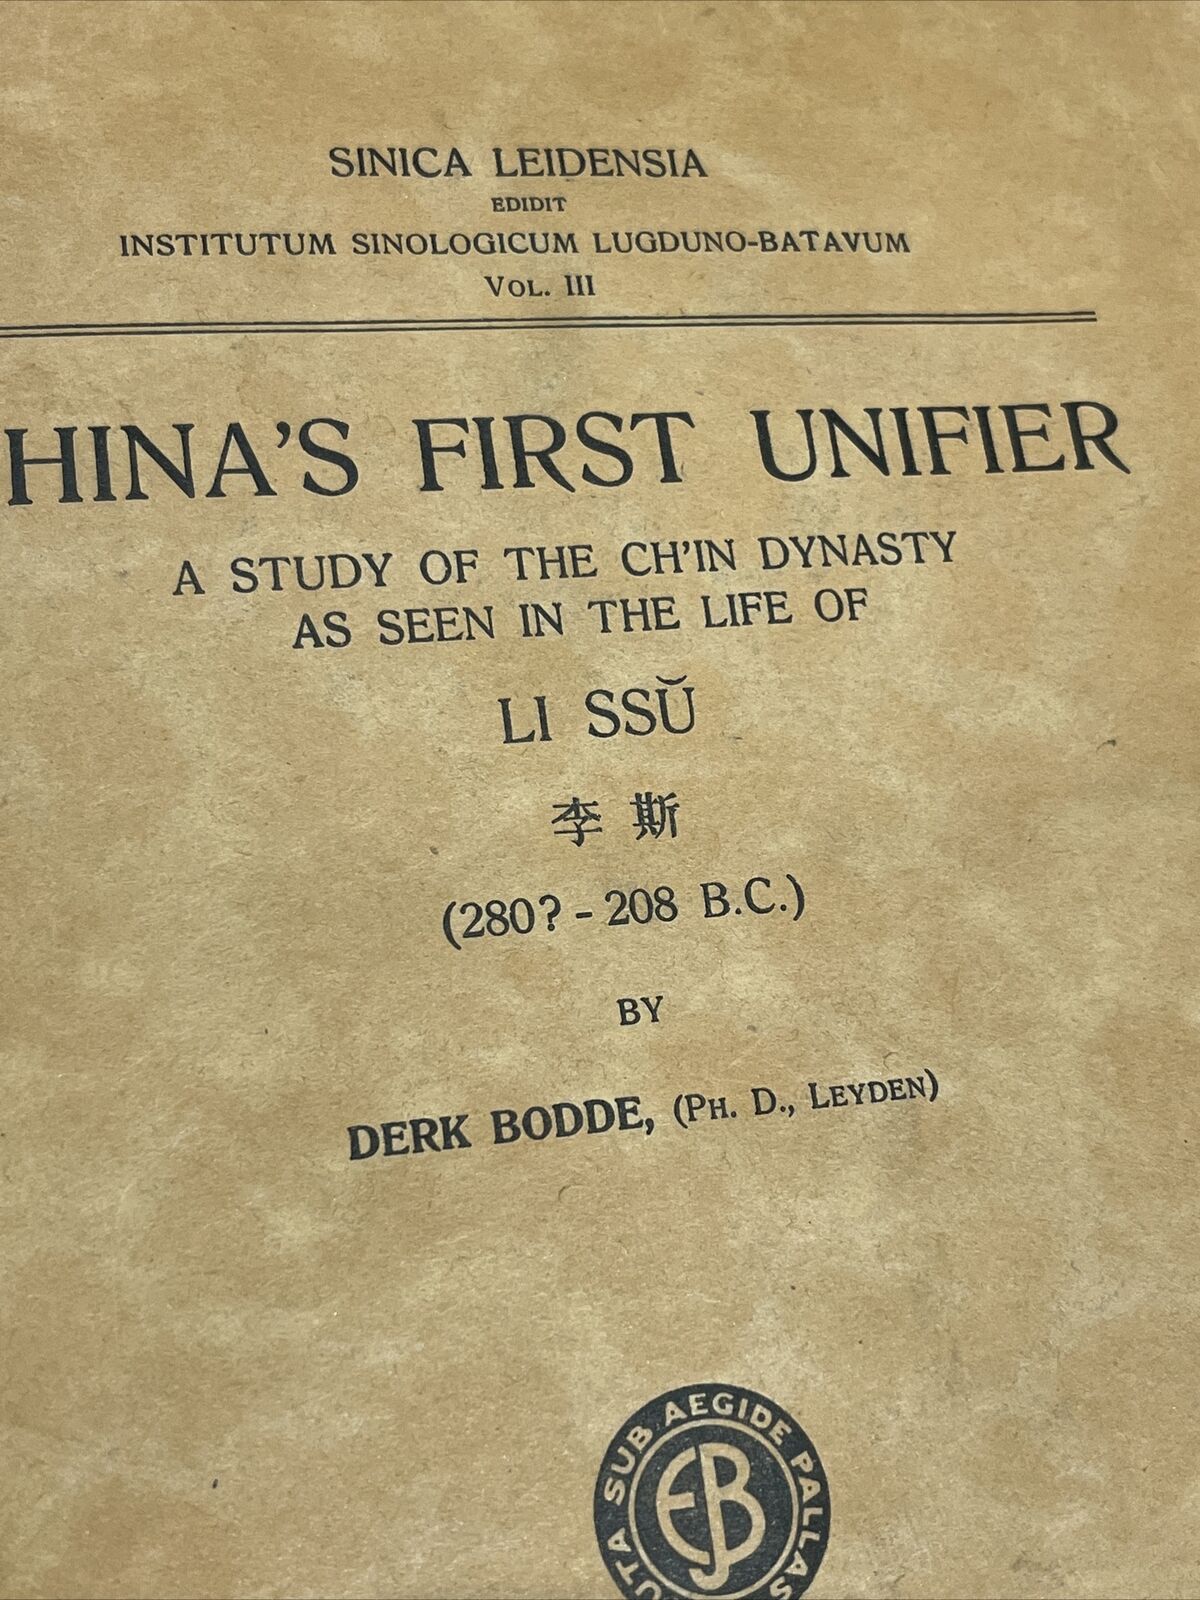 China’s First Unifier, Ch’in Dynasty Li Ssu, E J Brill 1938